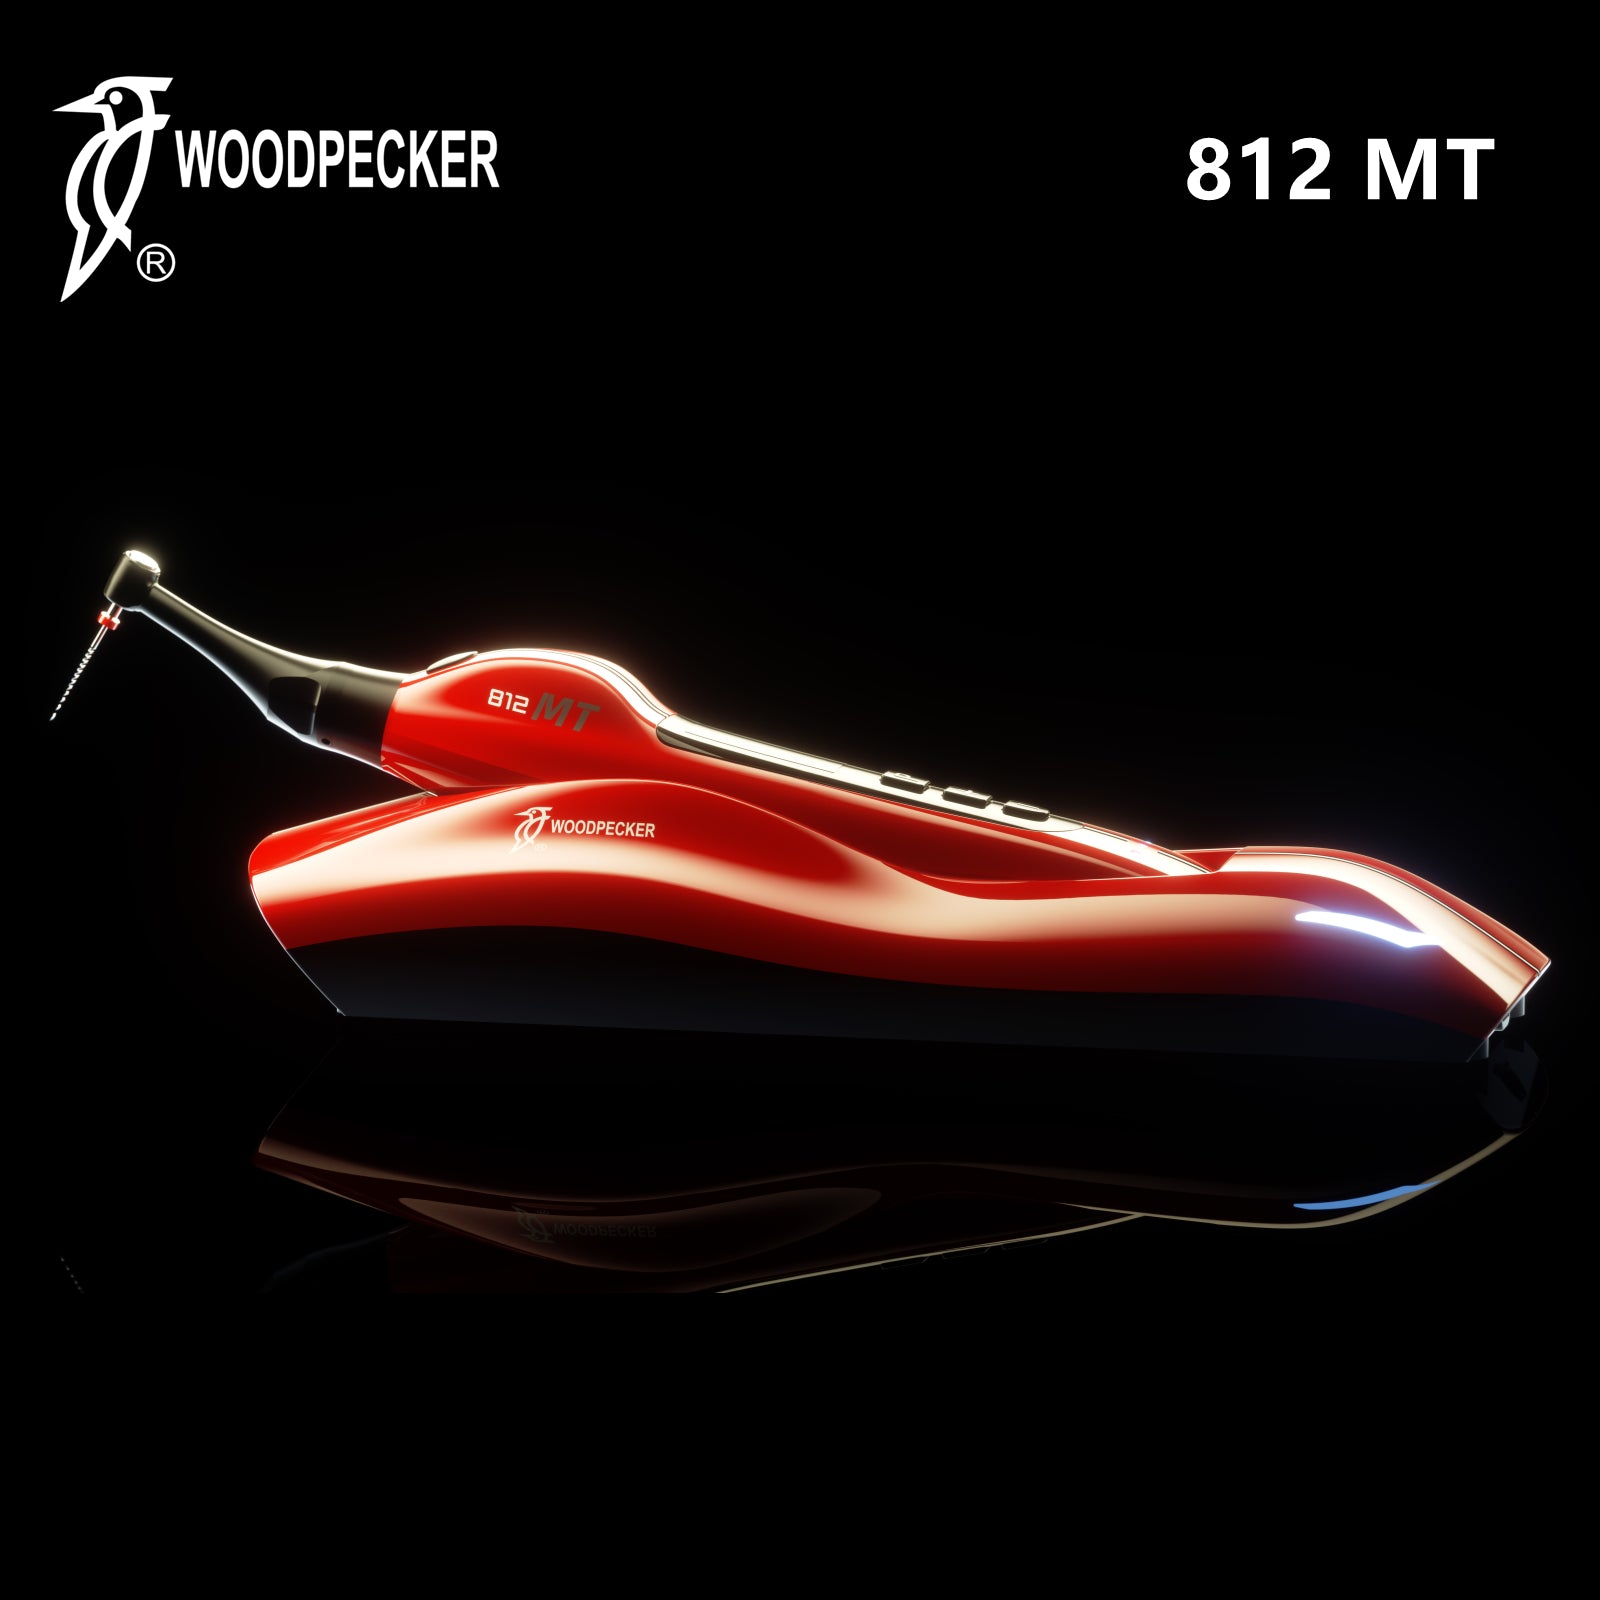 Woodpecker 812 MT EndoMotor by Dr Yoshi Terauchi